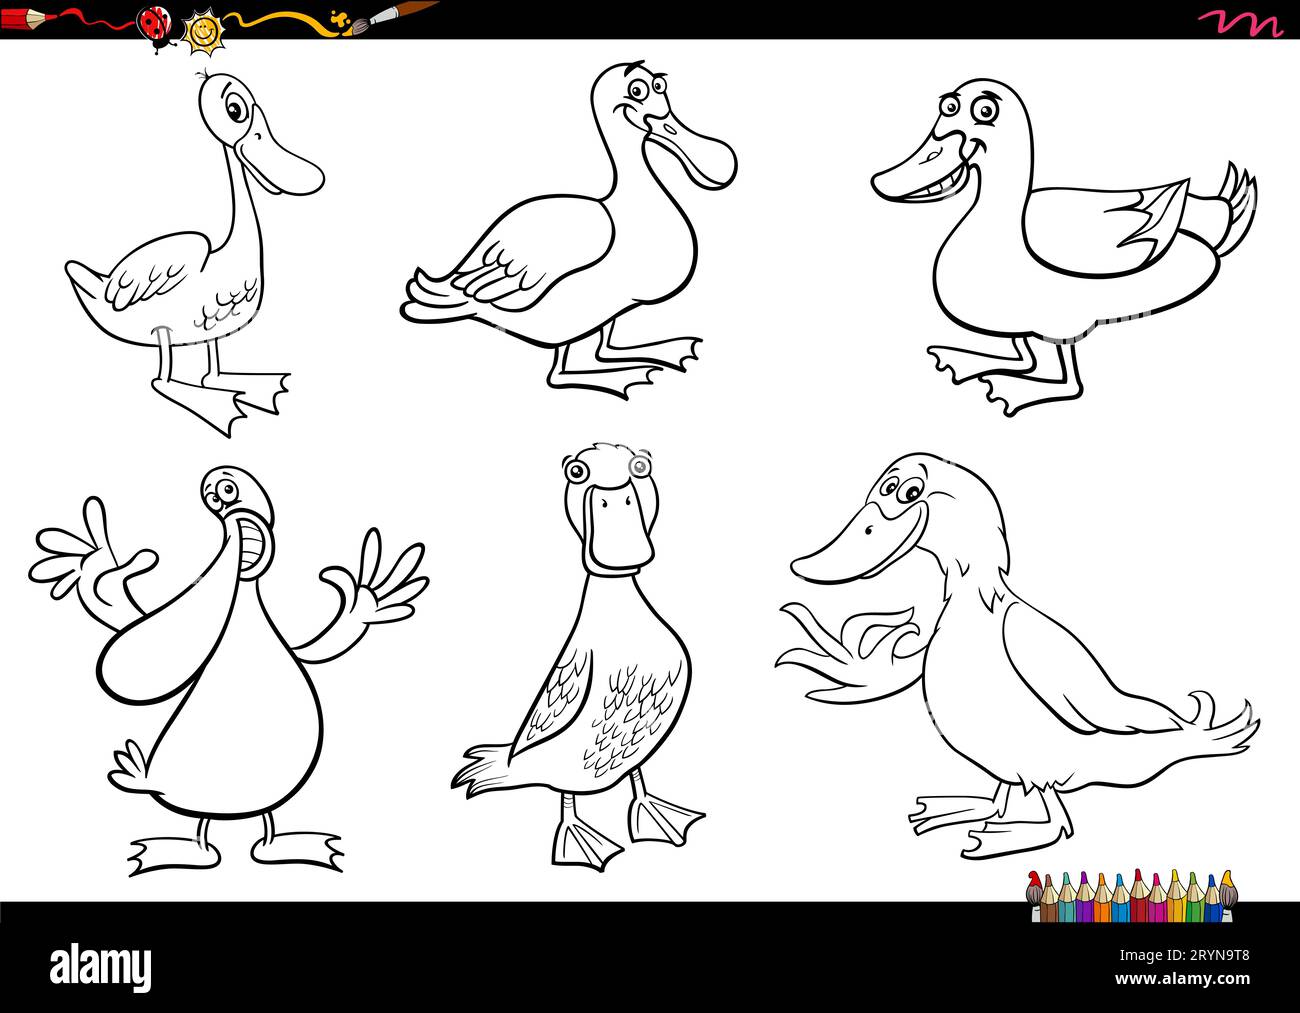 Schwarz-weiße Zeichentrickfigur mit Enten, Bauernhoftieren und Figuren, die eine Farbseite bilden Stockfoto